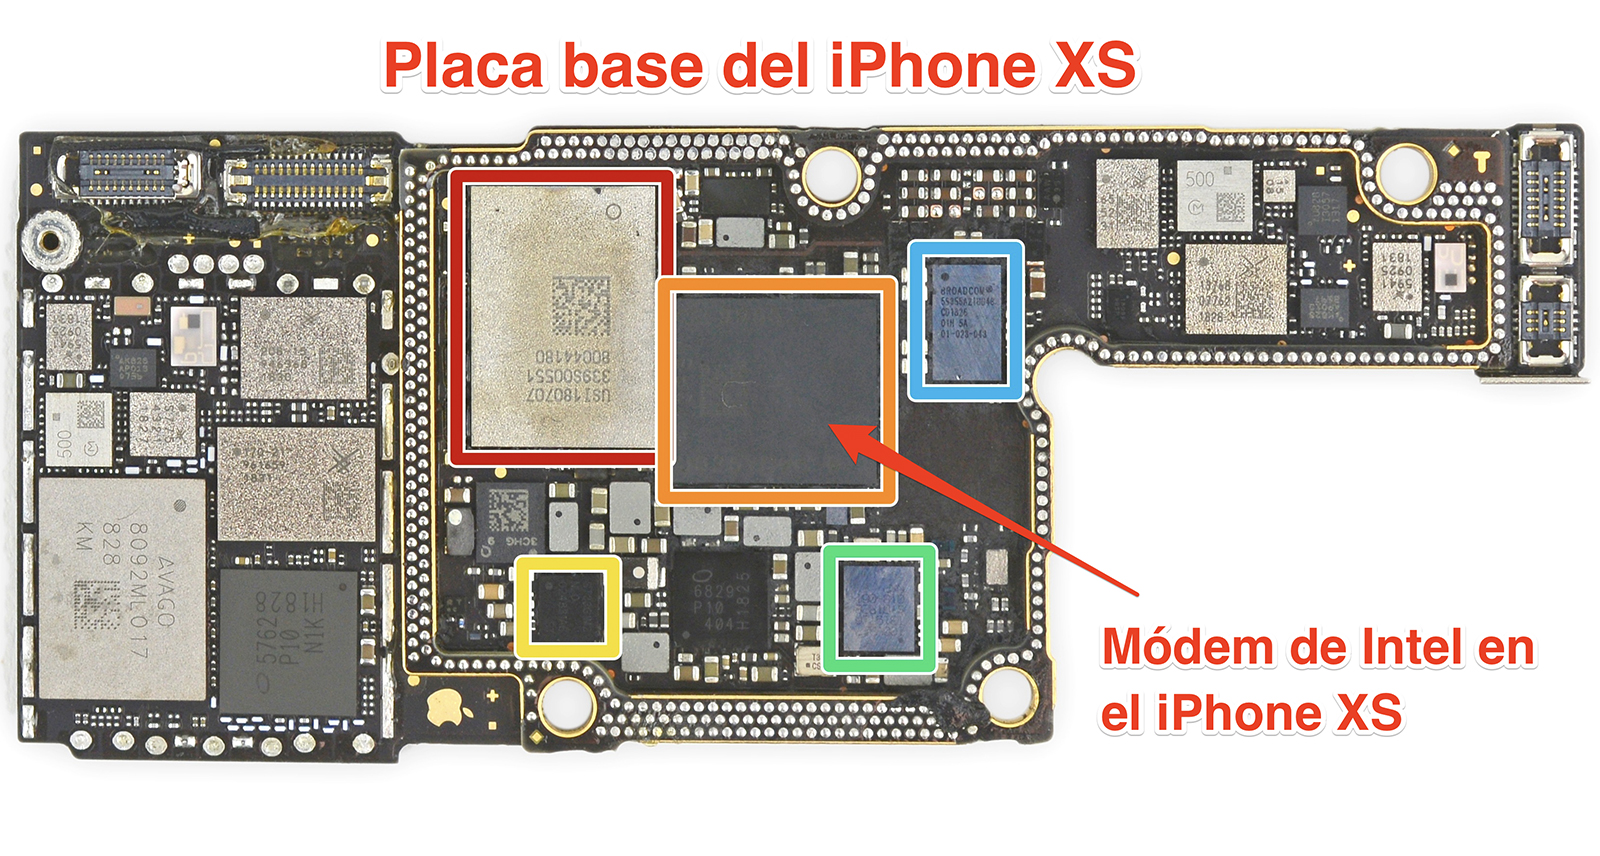 Placa base del iPhone XS con el módem de Intel indicado. 